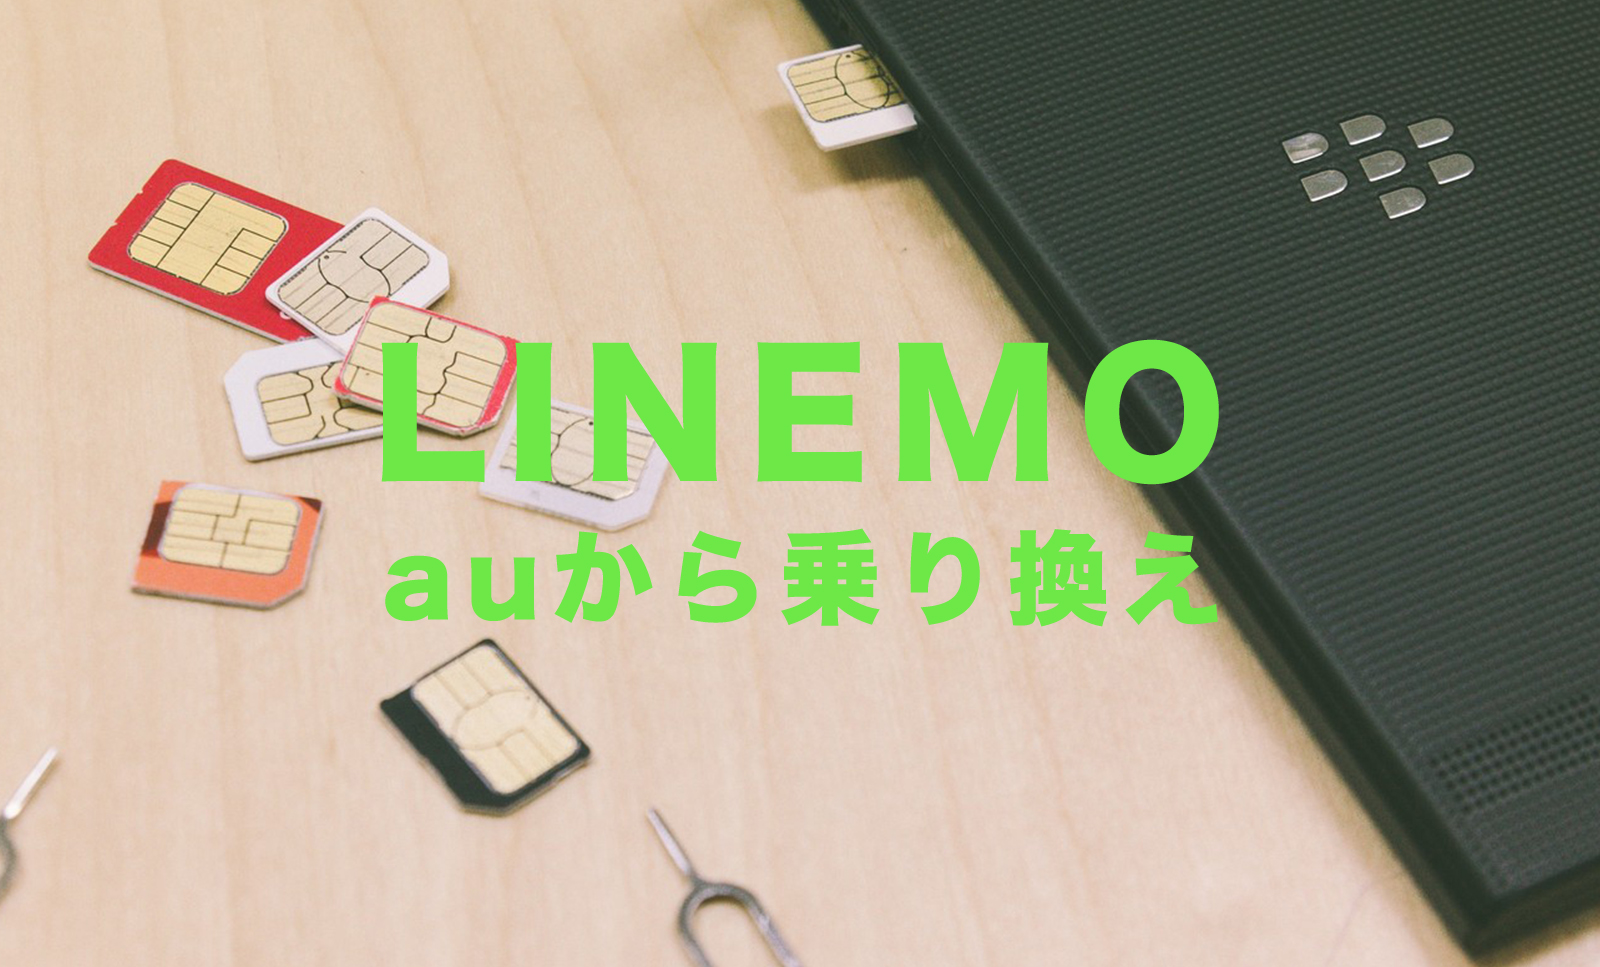 auからLINEMO(ラインモ)に乗り換えの手順&方法を解説のサムネイル画像